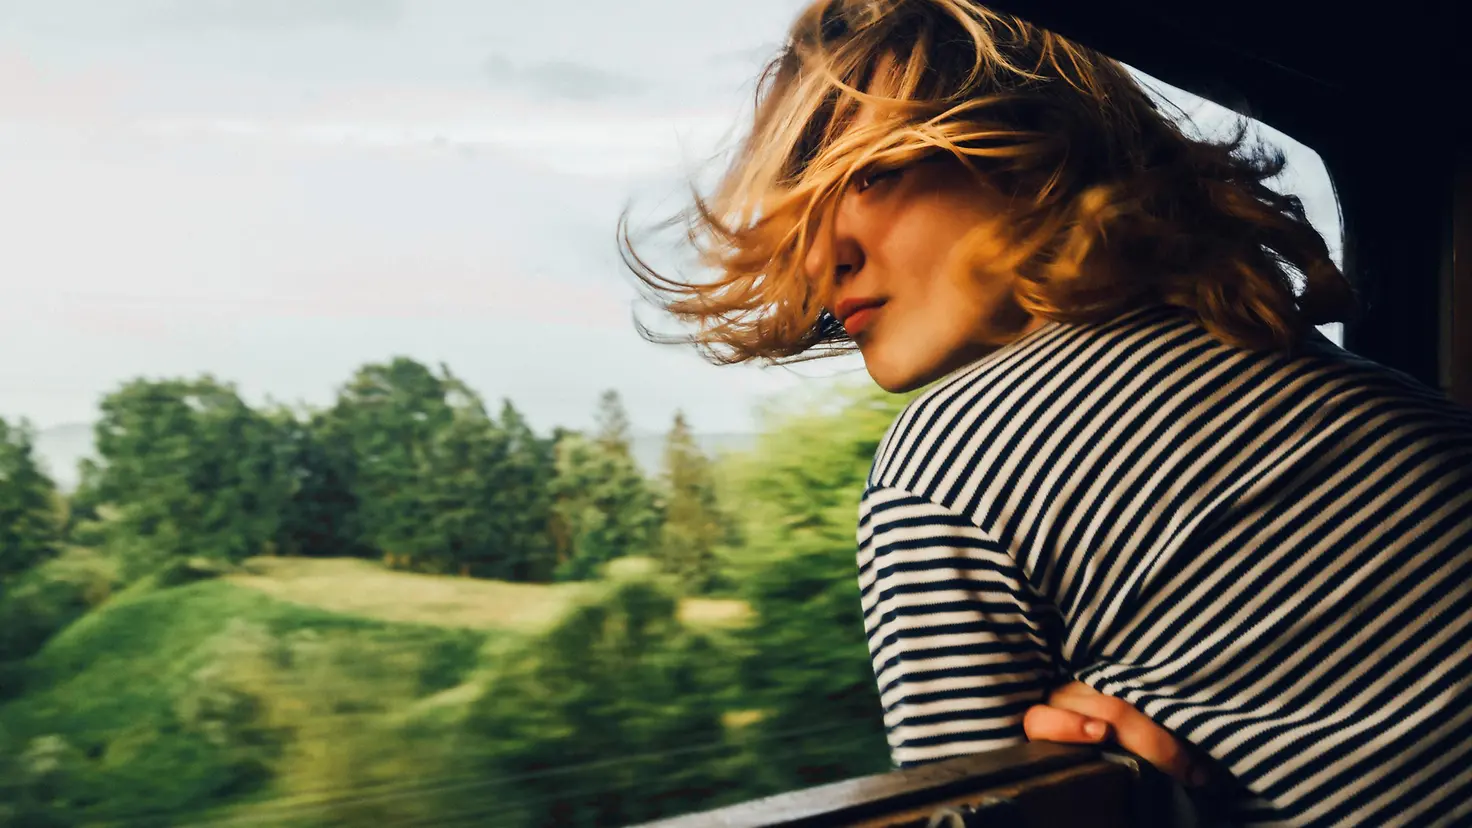 Eine junge lehnt sich aus dem geöffneten Fenster eines fahrenden Zuges und schaut in die vorbei fahrende Landschaft.